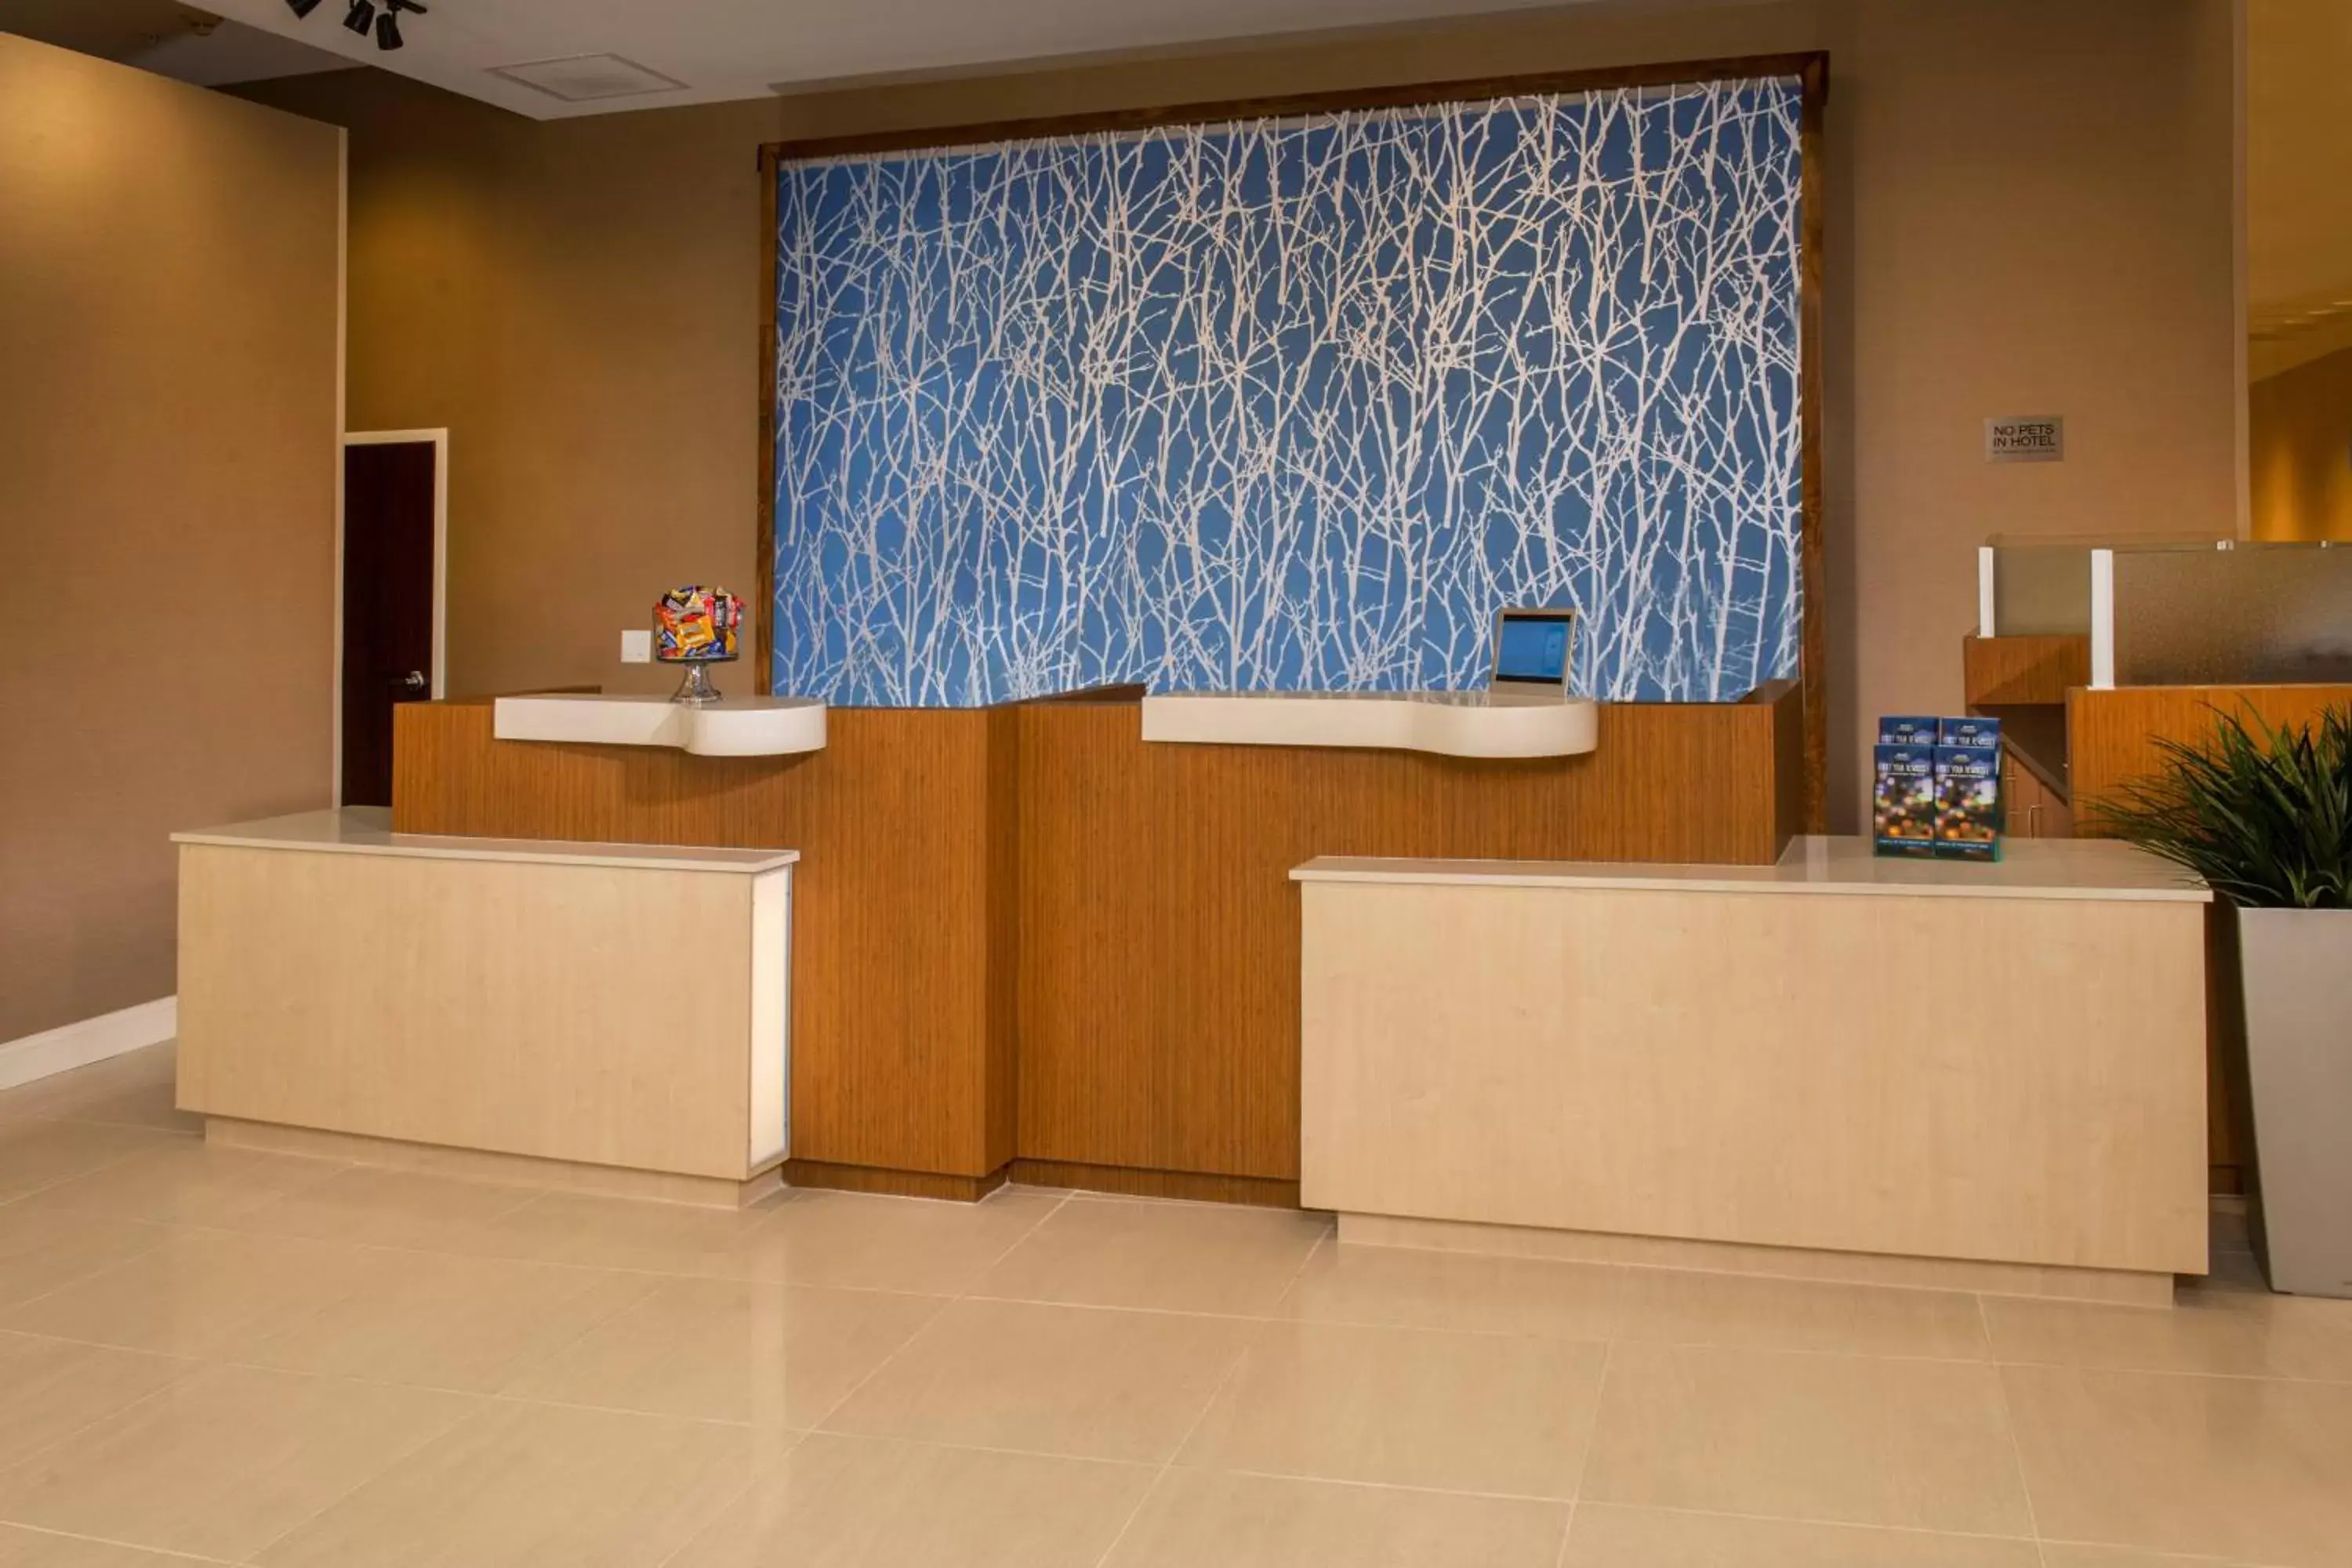 Lobby or reception, Lobby/Reception in Fairfield Inn & Suites by Marriott Washington